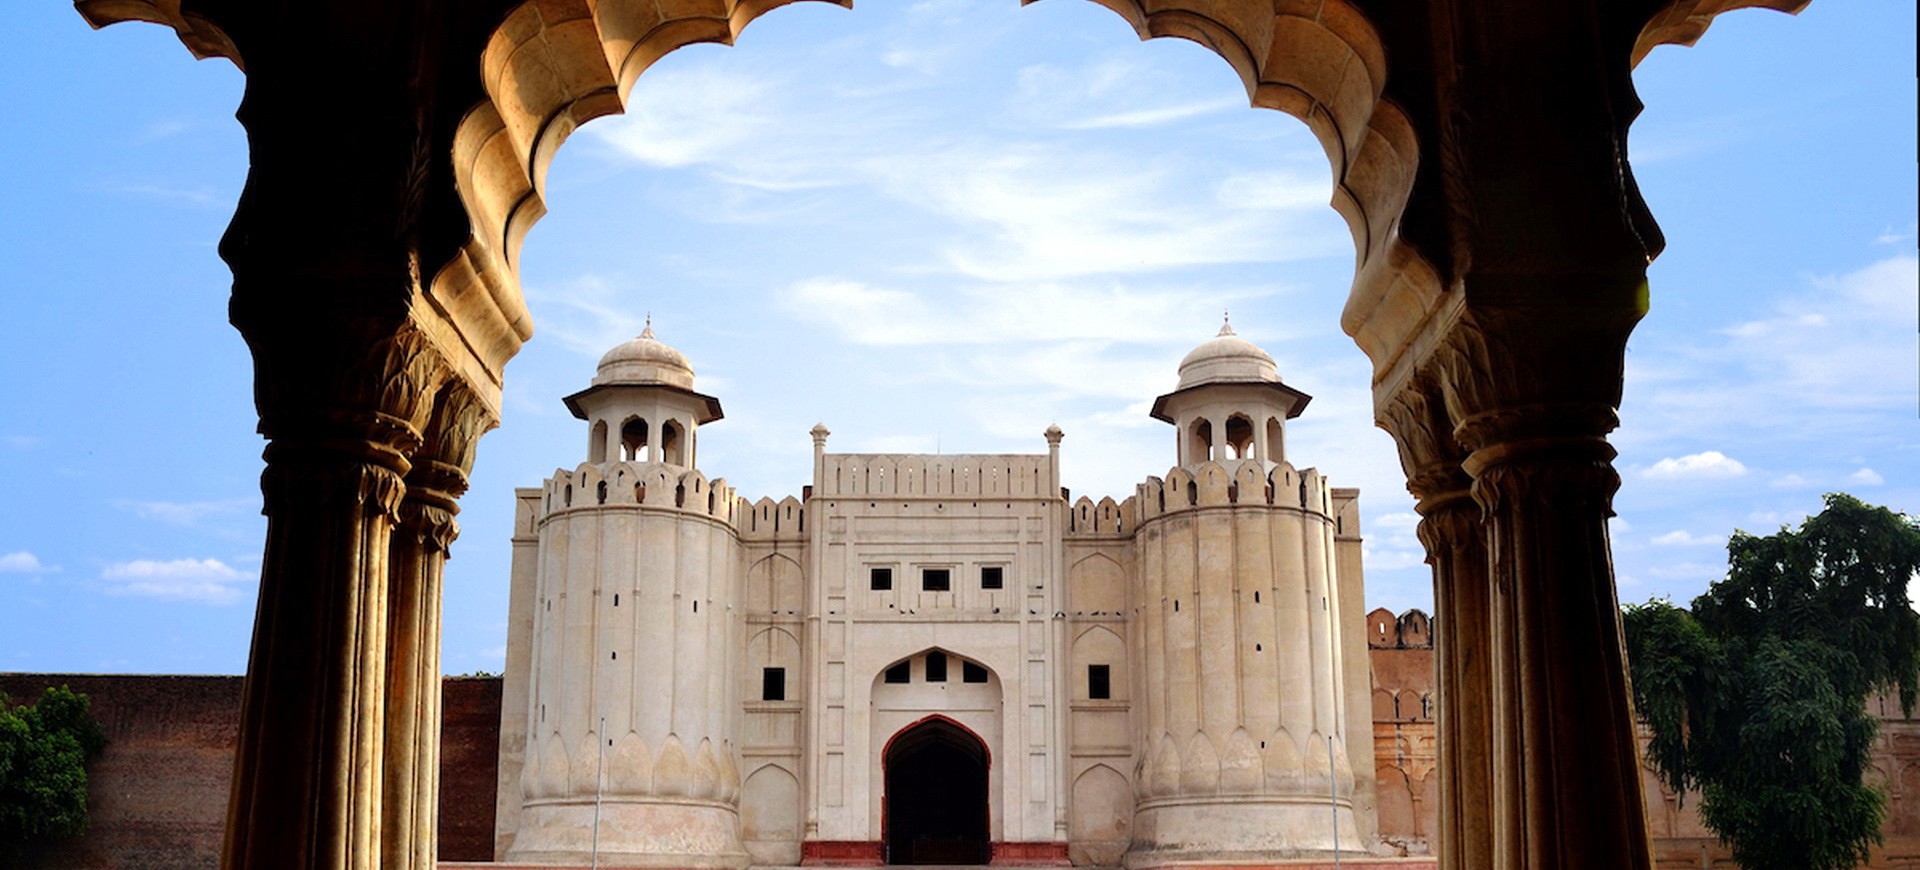 Le Fort ou la citadelle de Shahi Qila construit par l'empereur Moghol Shah Jahan à Lahore